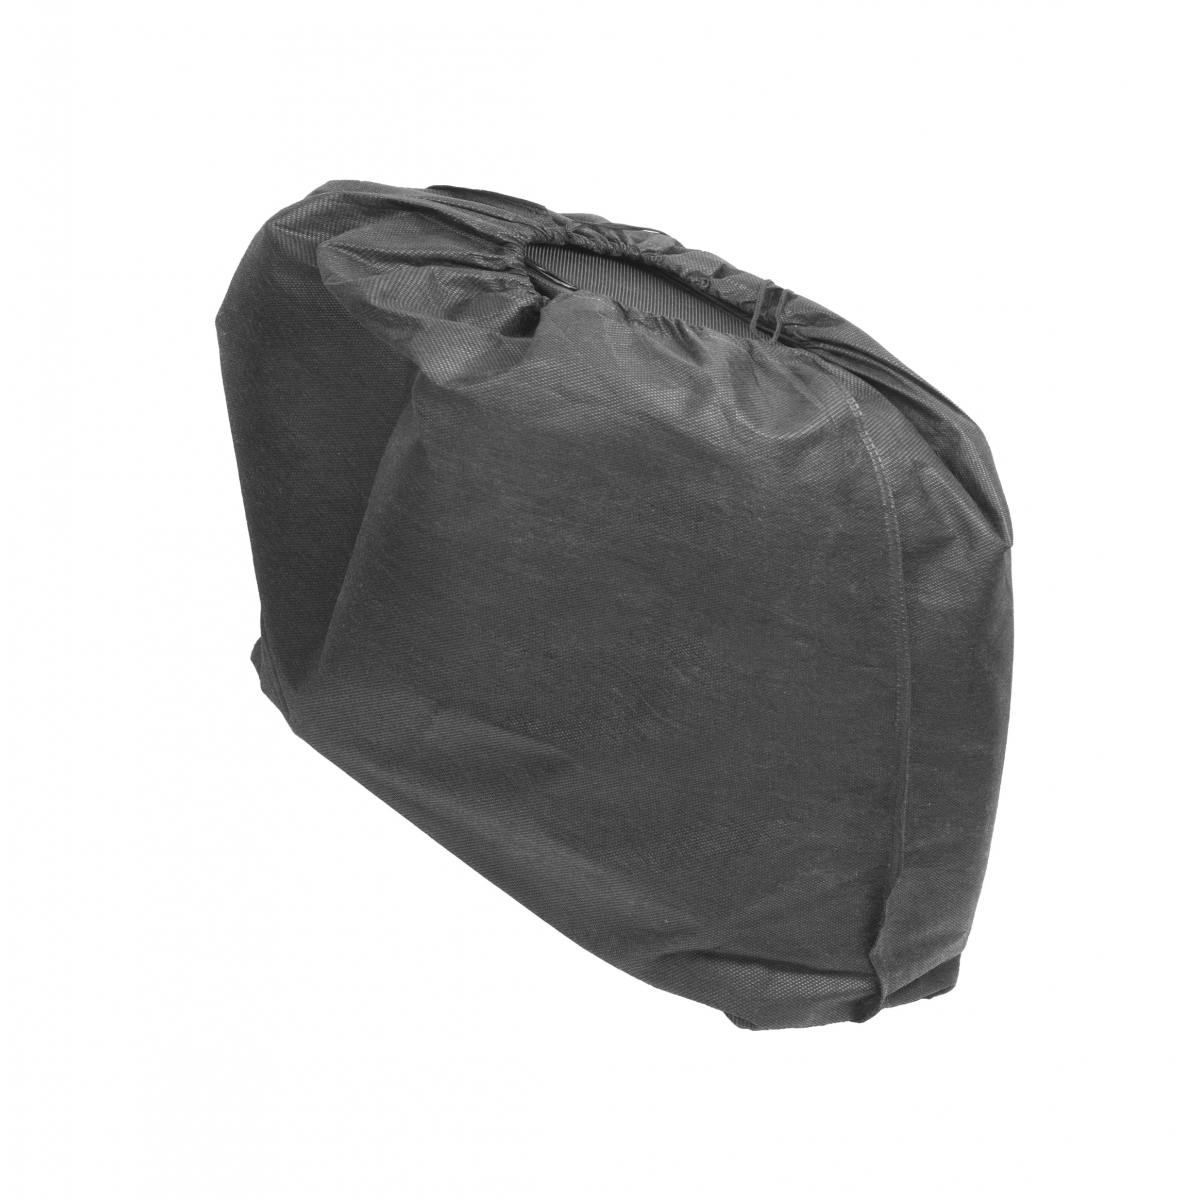 L05 - Smart cooler bag